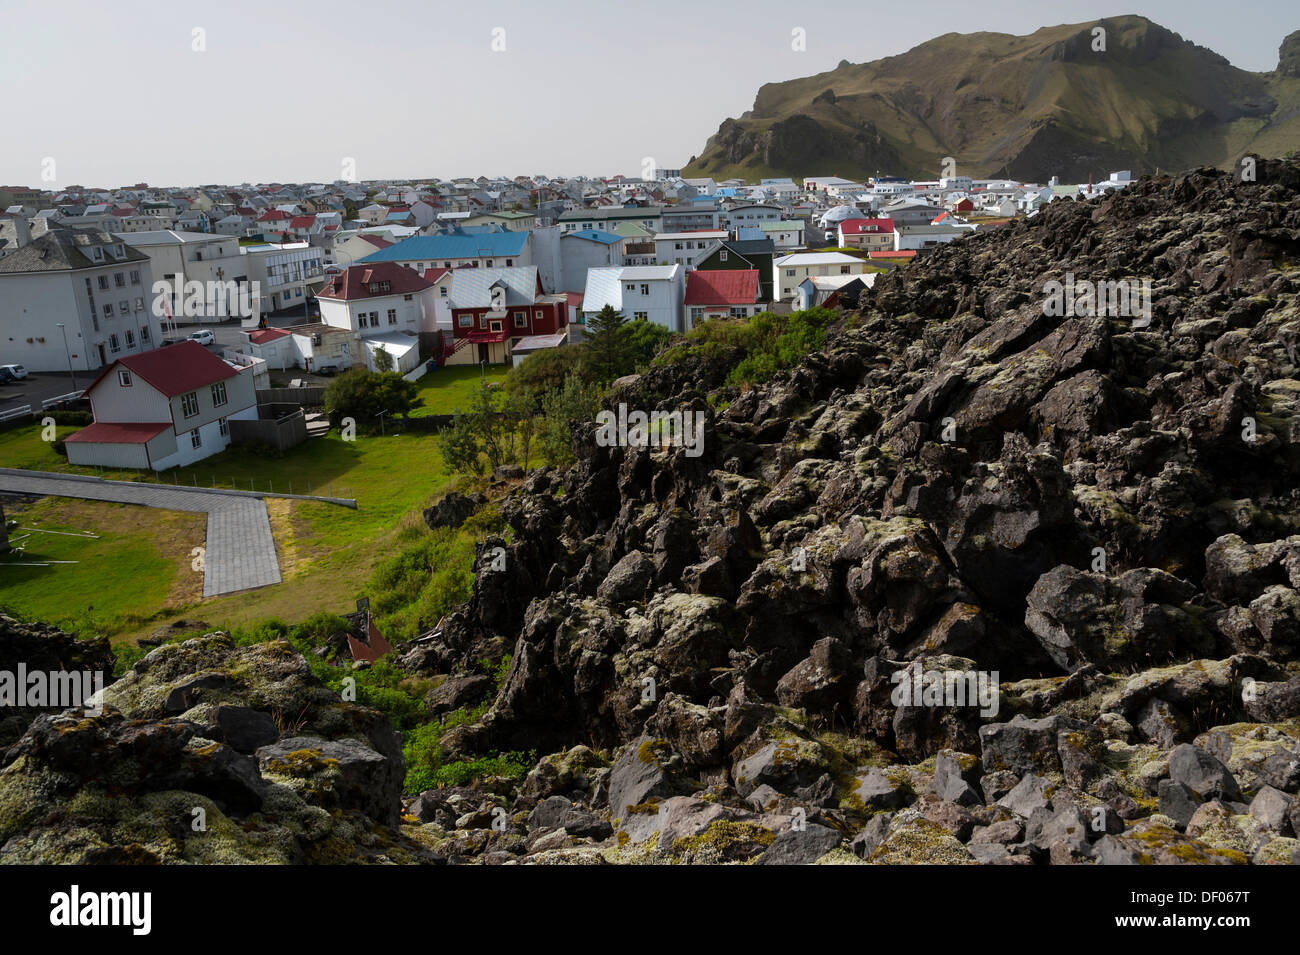 Eldfell campo di lava, città di Vestmannaeyjar, Isola di Heimaey, Isole Westman, Suðurland o Sud dell'Islanda, Islanda, Europa Foto Stock